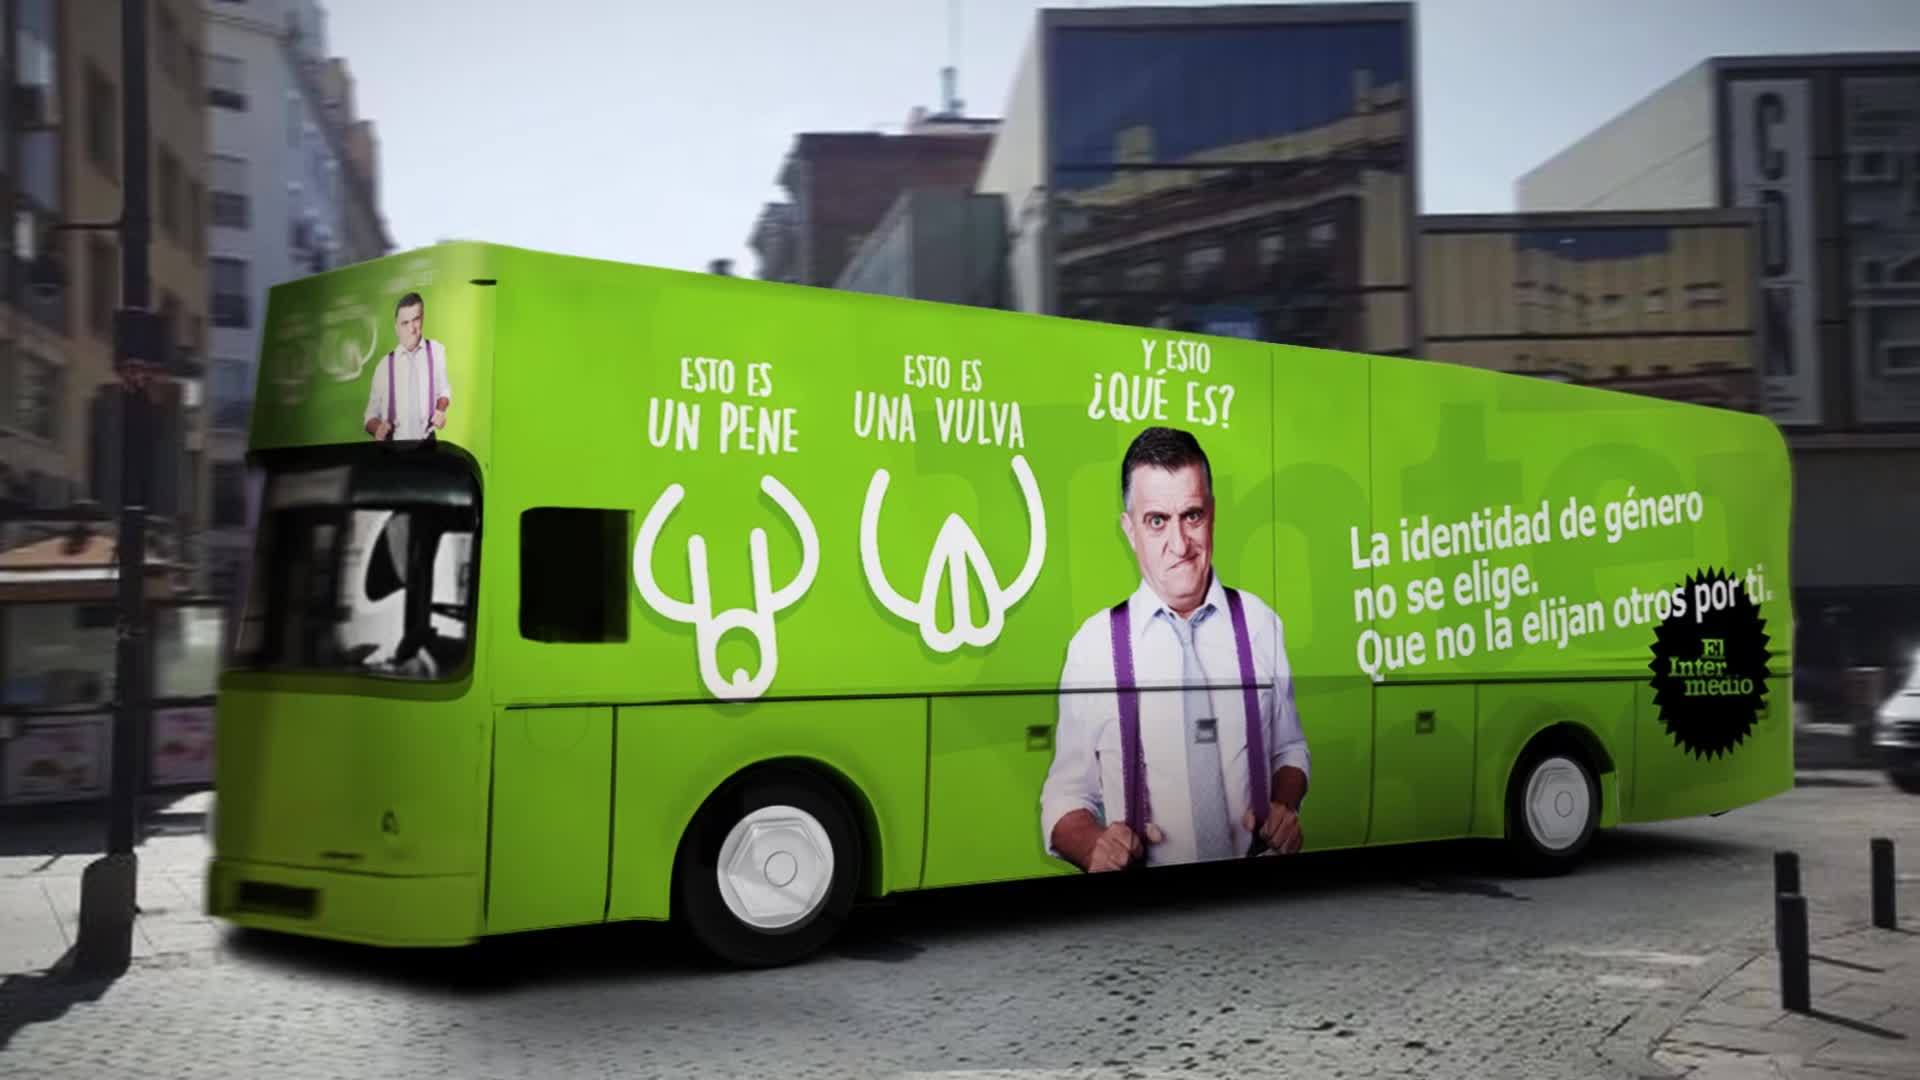 Temporada 11 (02-03-17) El Intermedio saca a las calles de Madrid su propio autobús reivindicativo